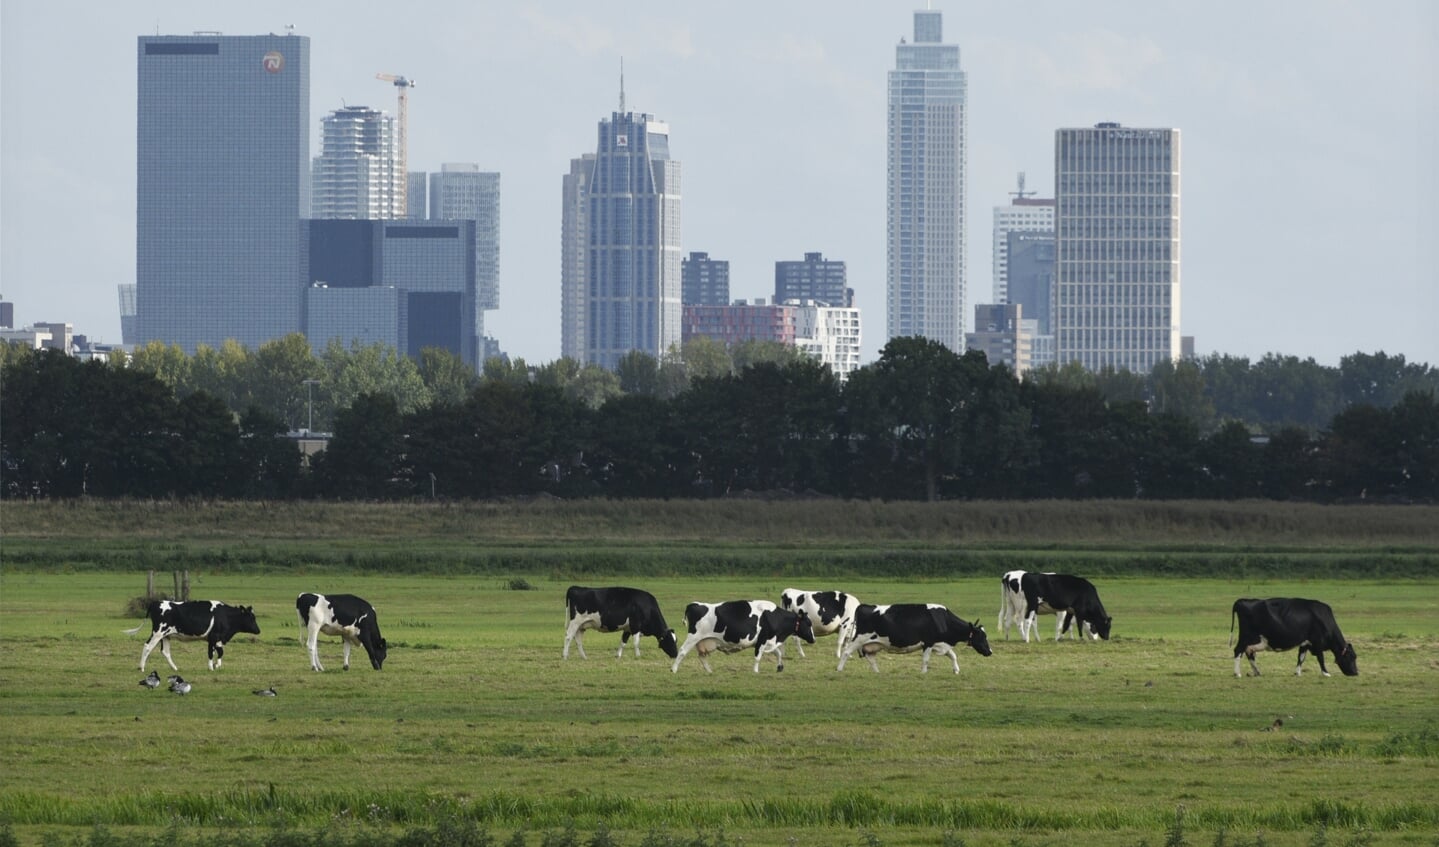 Melkvee graast in de Schieveense polder nabij Rotterdam. In het gebied is een doorloop van snelweg A16 gepland.